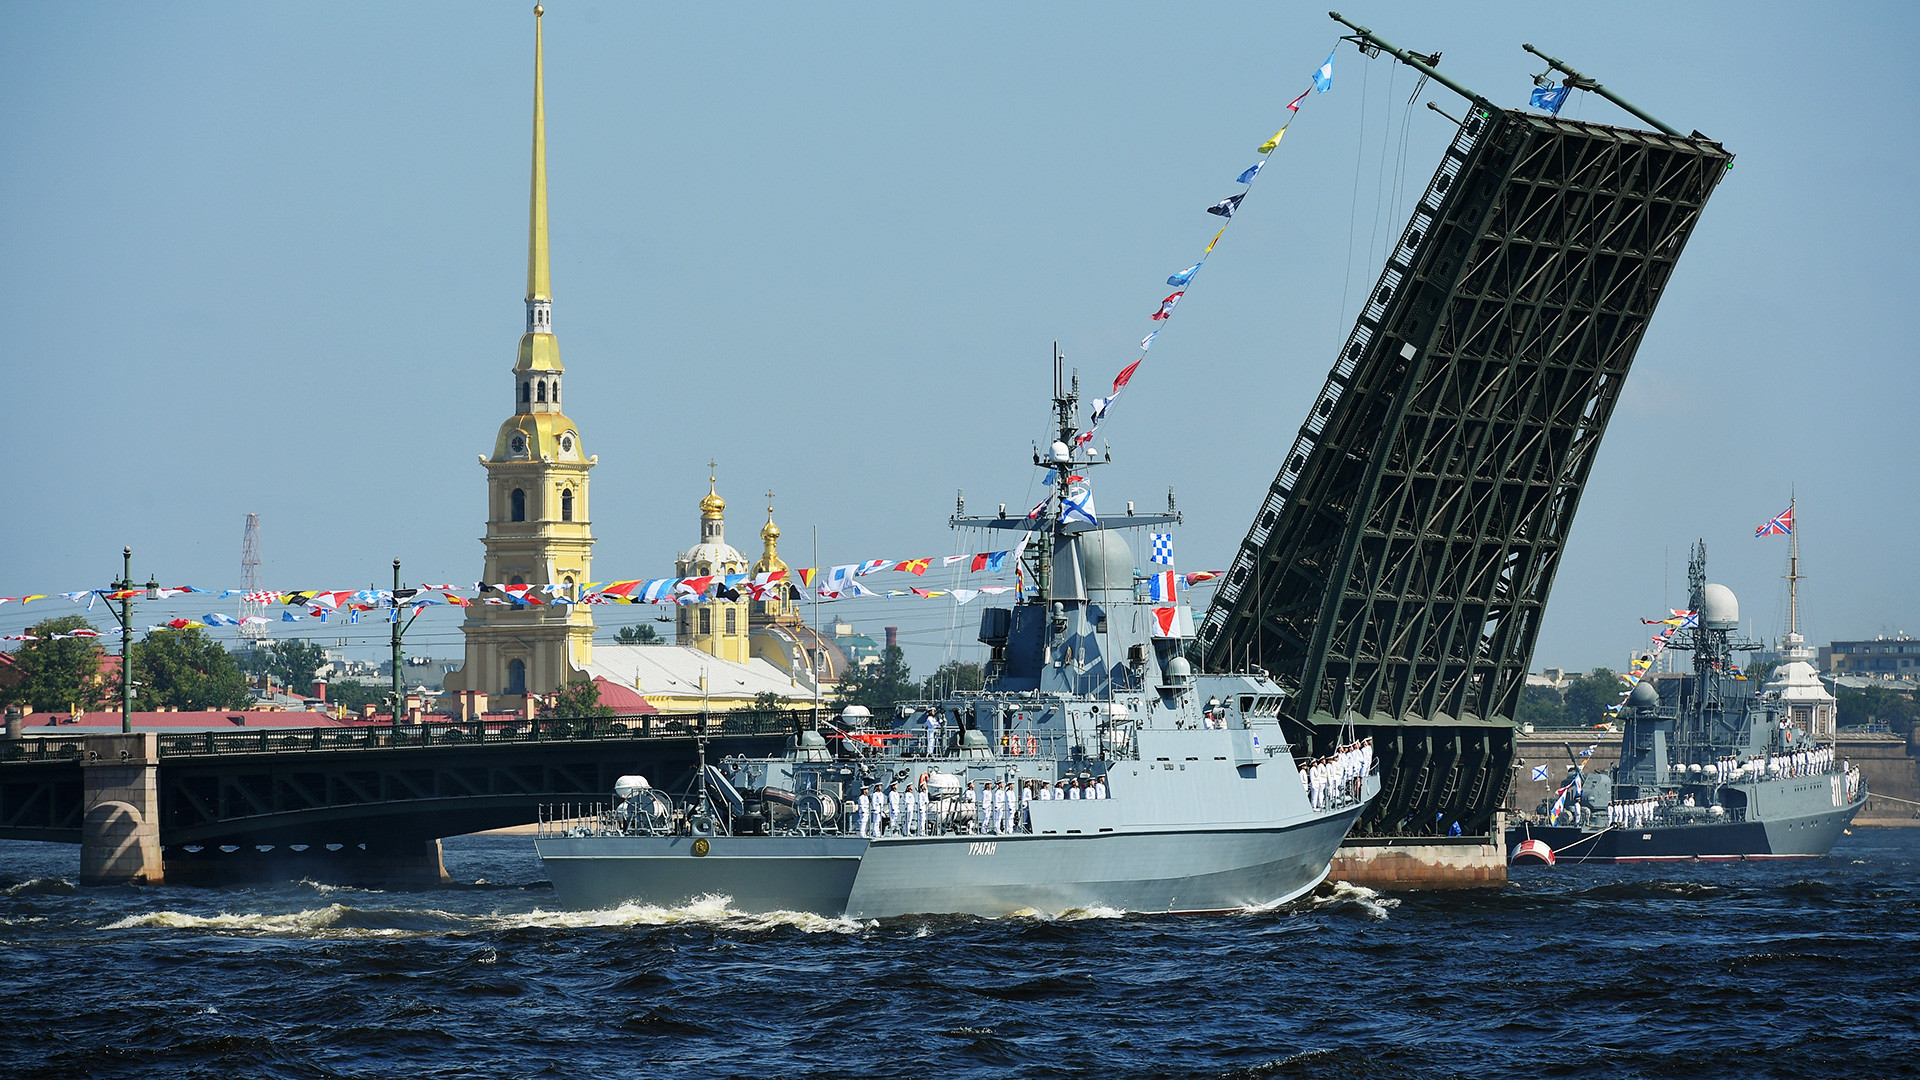 Mali raketni brod "Uragan" na glavnoj pomorskoj vojnoj paradi u Sankt-Peterburgu povodom Dana ratne mornarice Rusije.